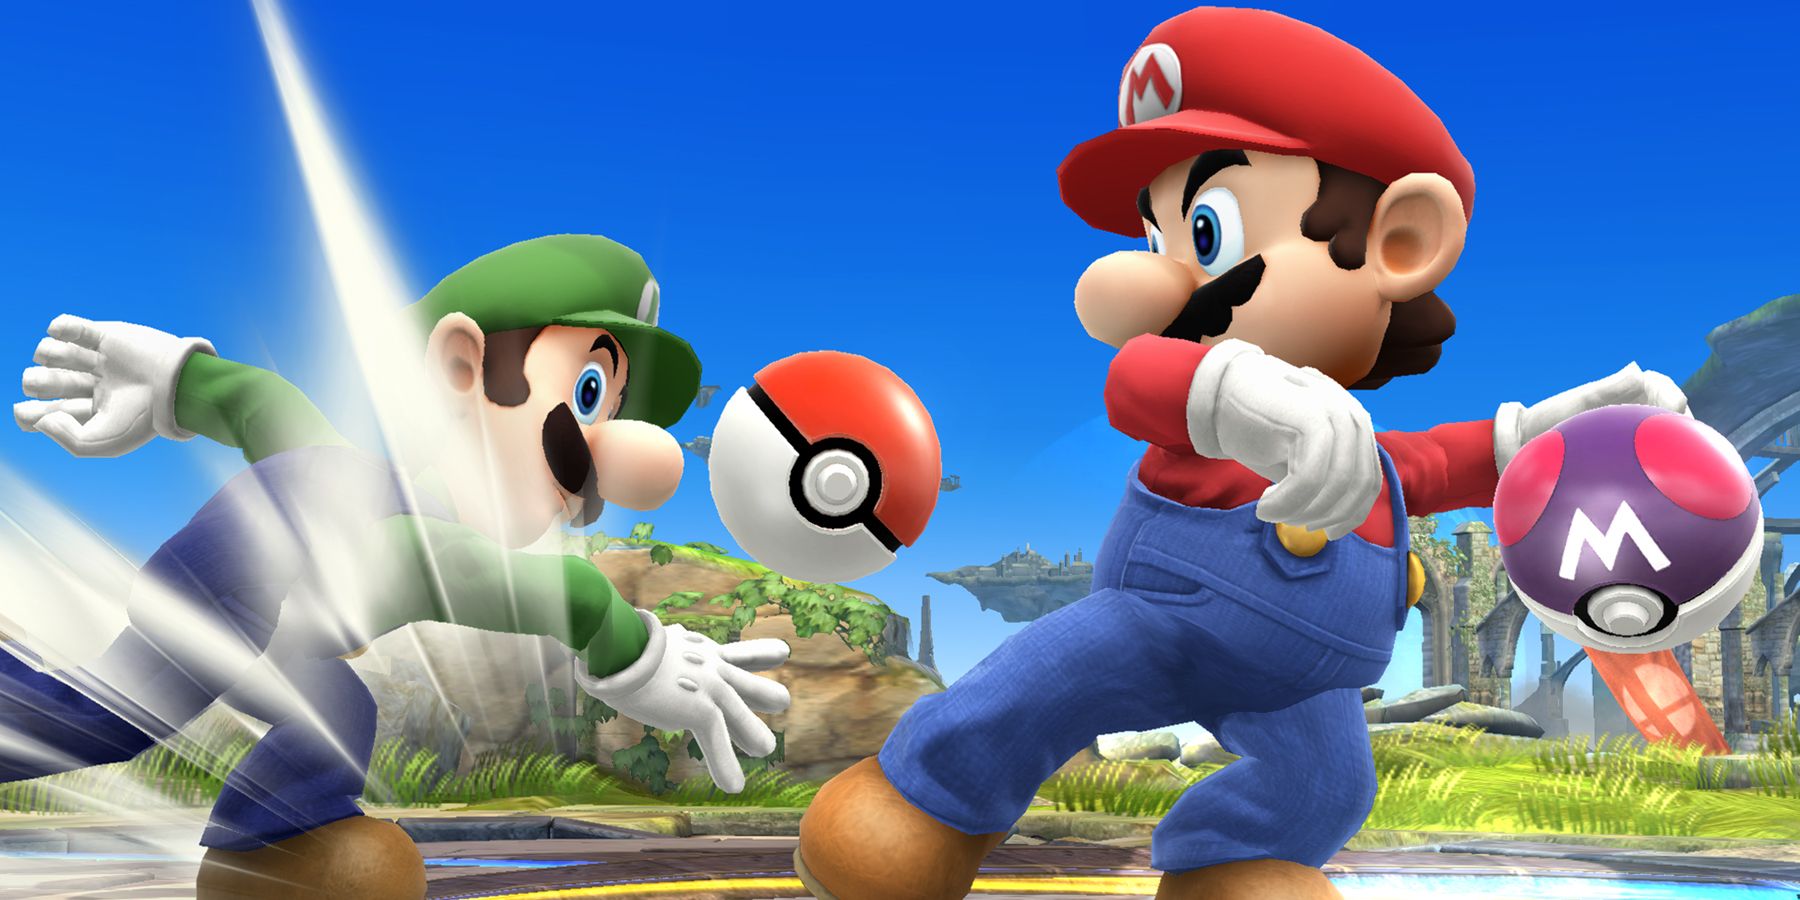 Mario and Luigi in Smash Bros